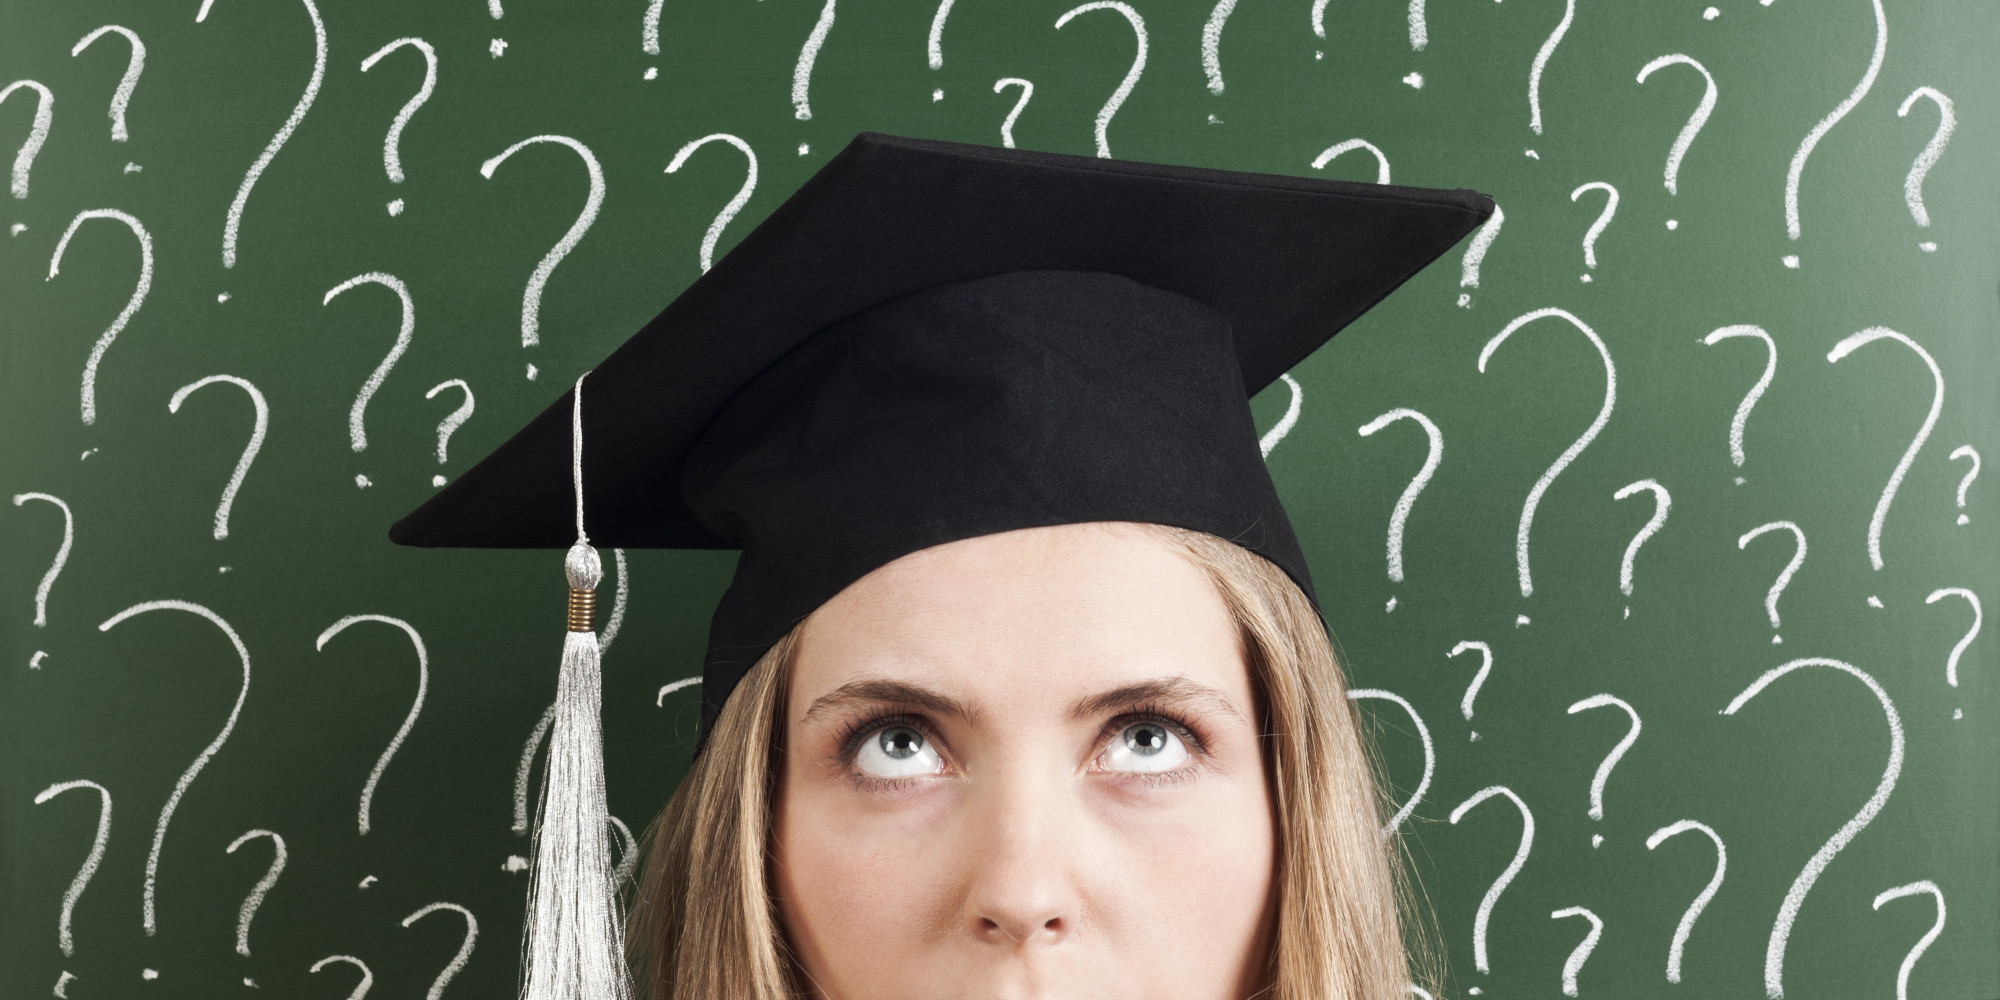 MBA X Mestrado: qual é a melhor opção?